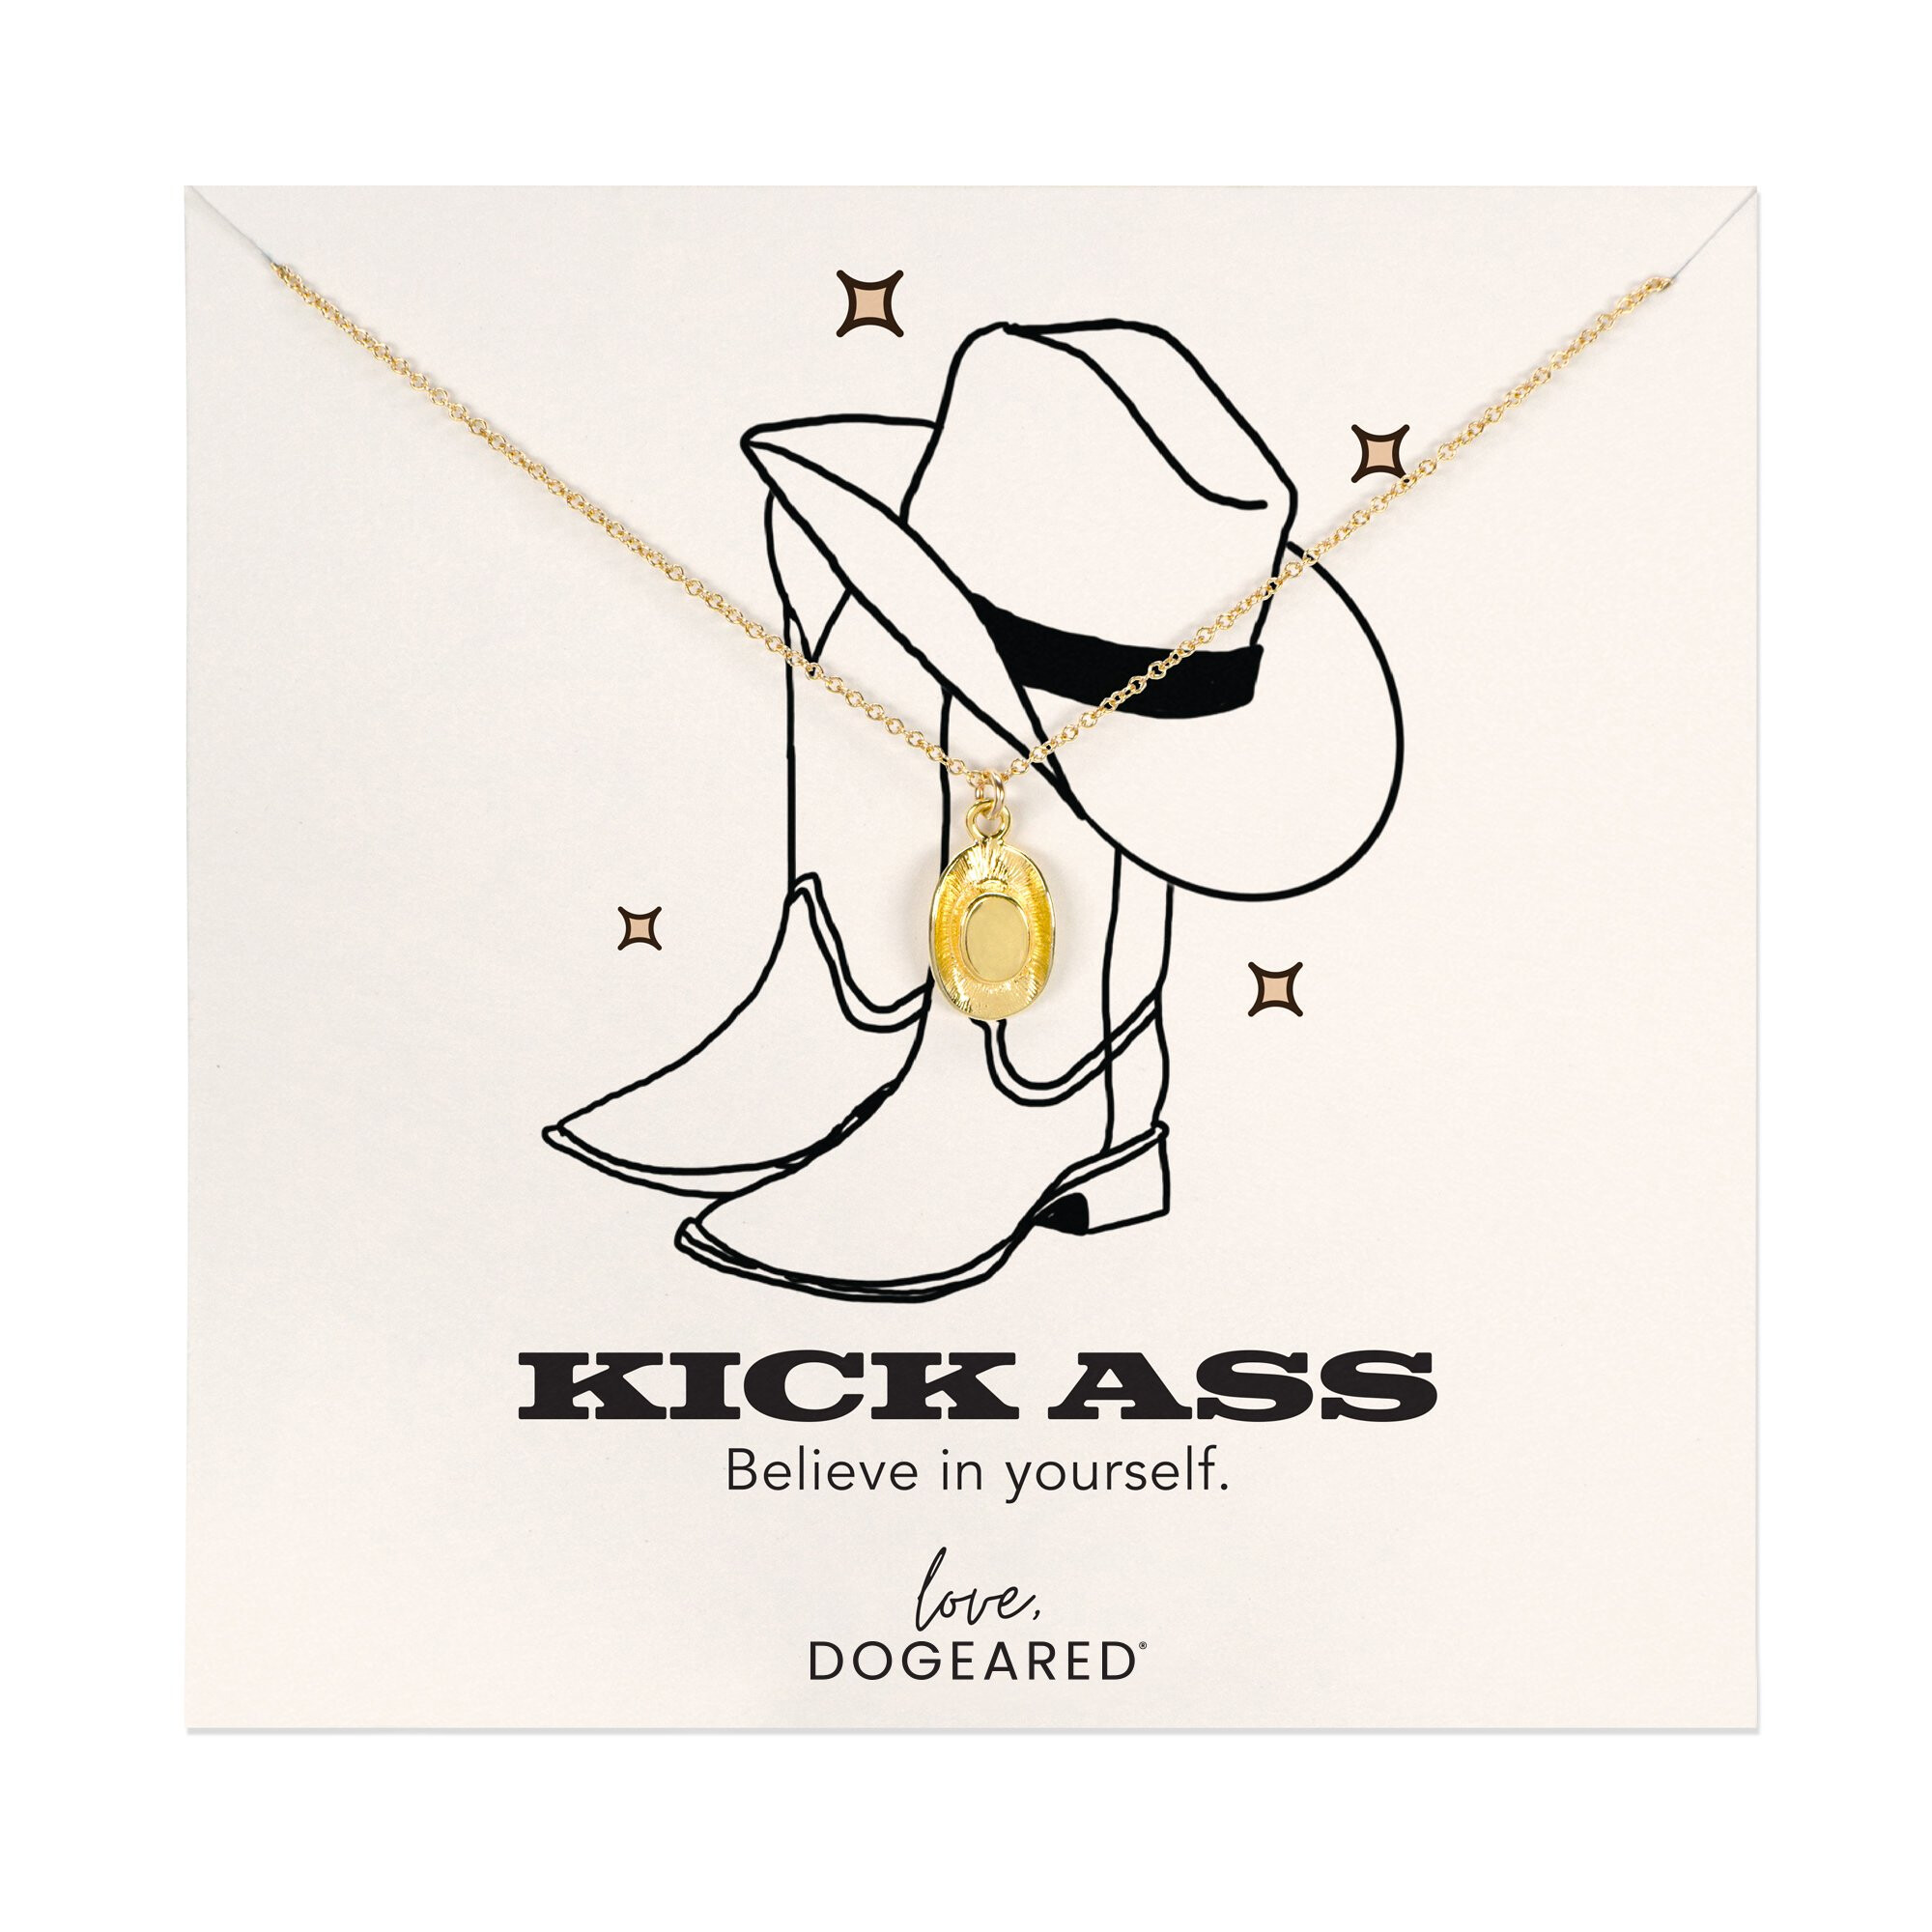 Bijuterii Femei Dogeared Modern Kick Ass Cowboy Hat Necklace 16quot w 2quot Extender Gold